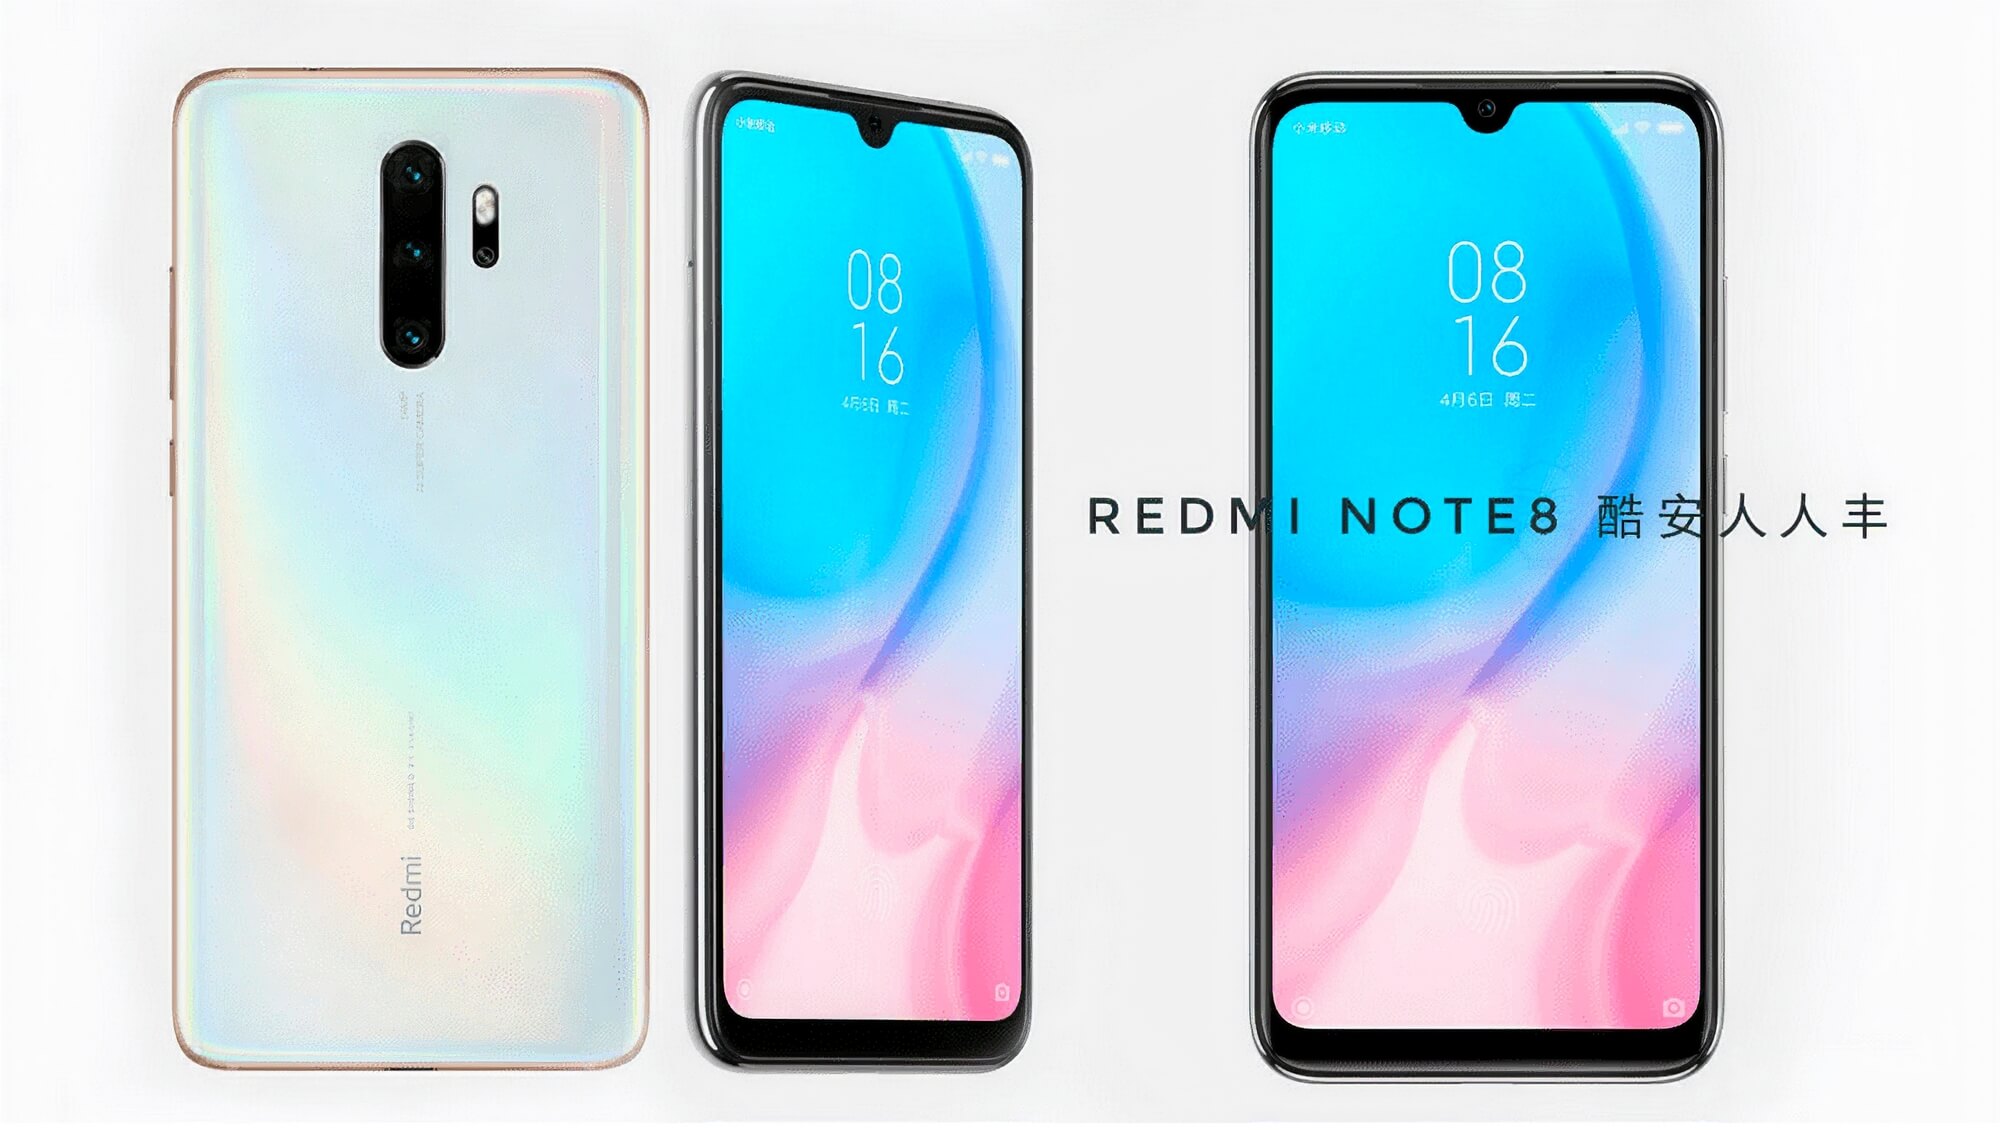 Smartfon Redmi Note 8 zostanie zaprezentowany wraz z Redmi TV - 29 sierpnia